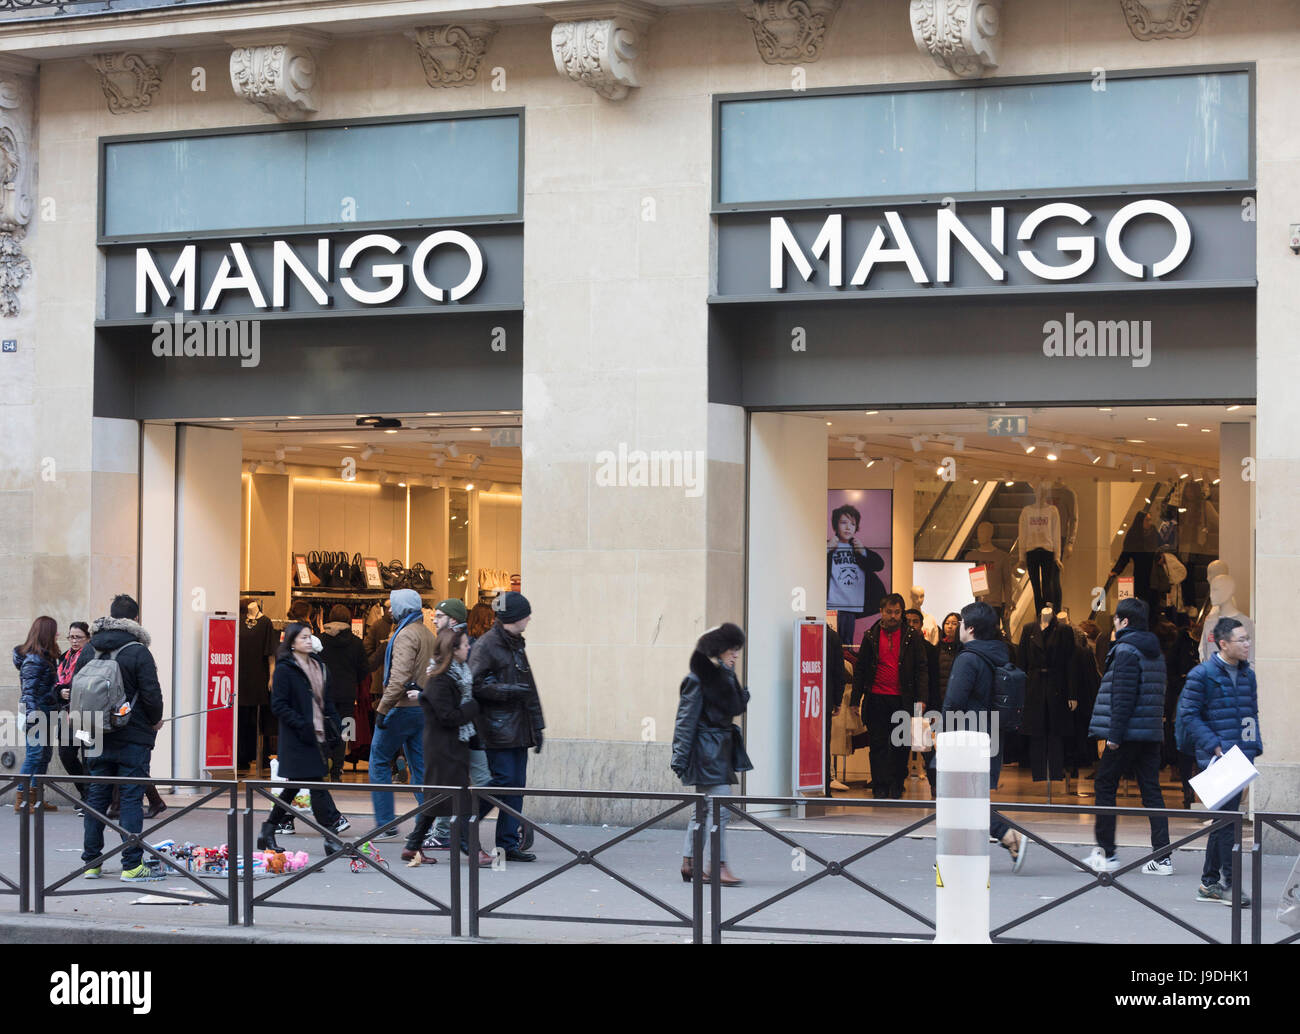 Mango clothing store, Paris, France Stock Photo